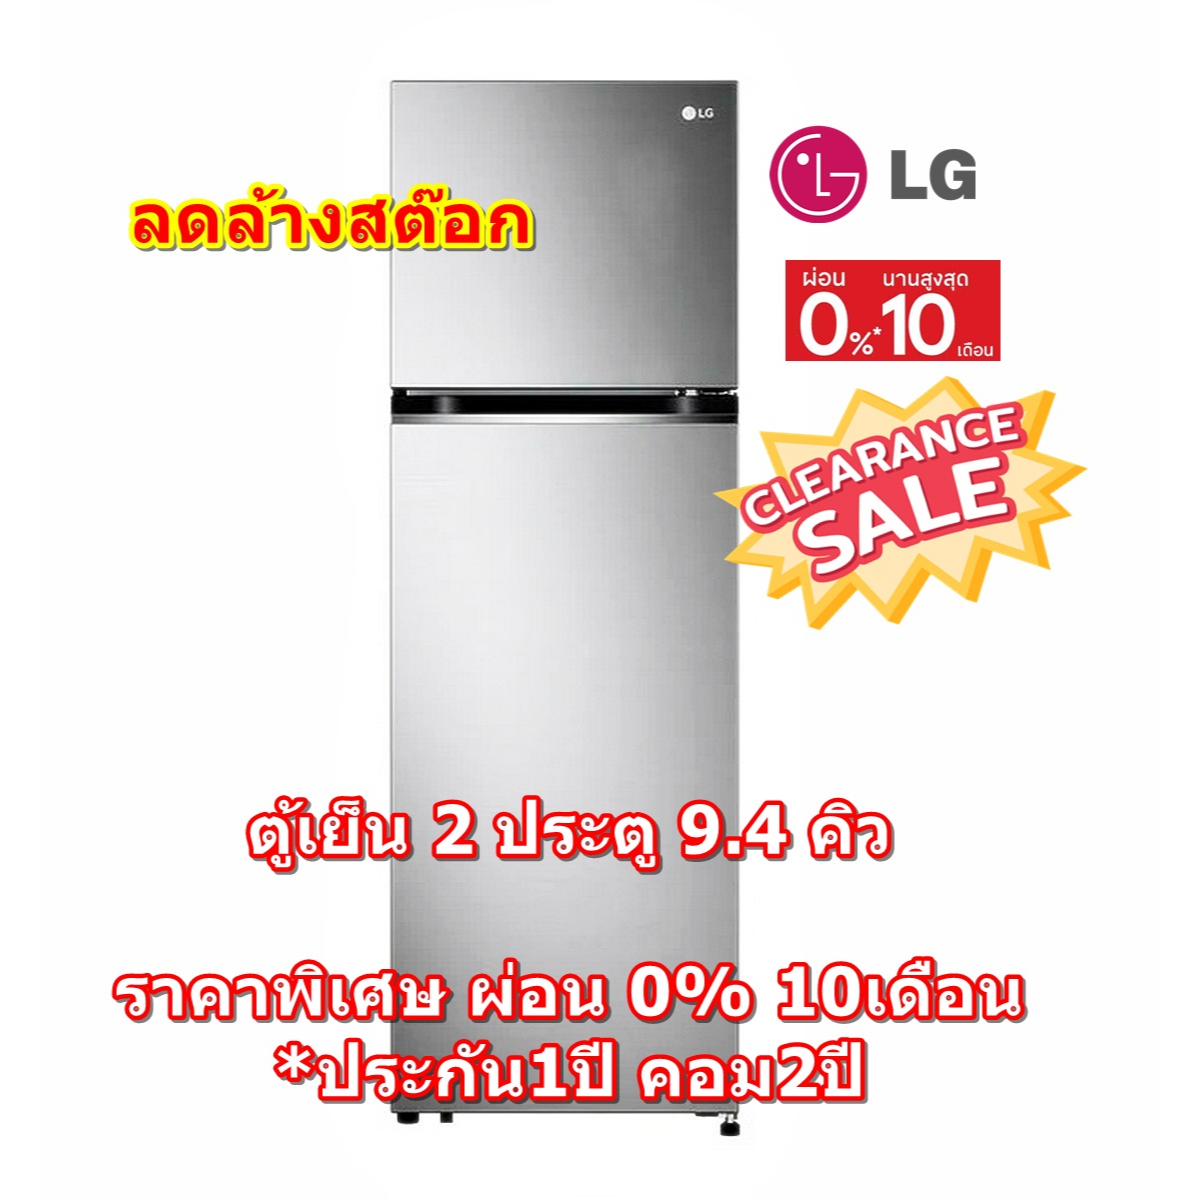 [ผ่อน0%10ด] LG ตู้เย็น 2 ประตู GV-B262PLGB 9.4 คิว สีเงิน Smart Inverter Compressor - Smart Diagnosis (ชลบุรีส่งฟรี)